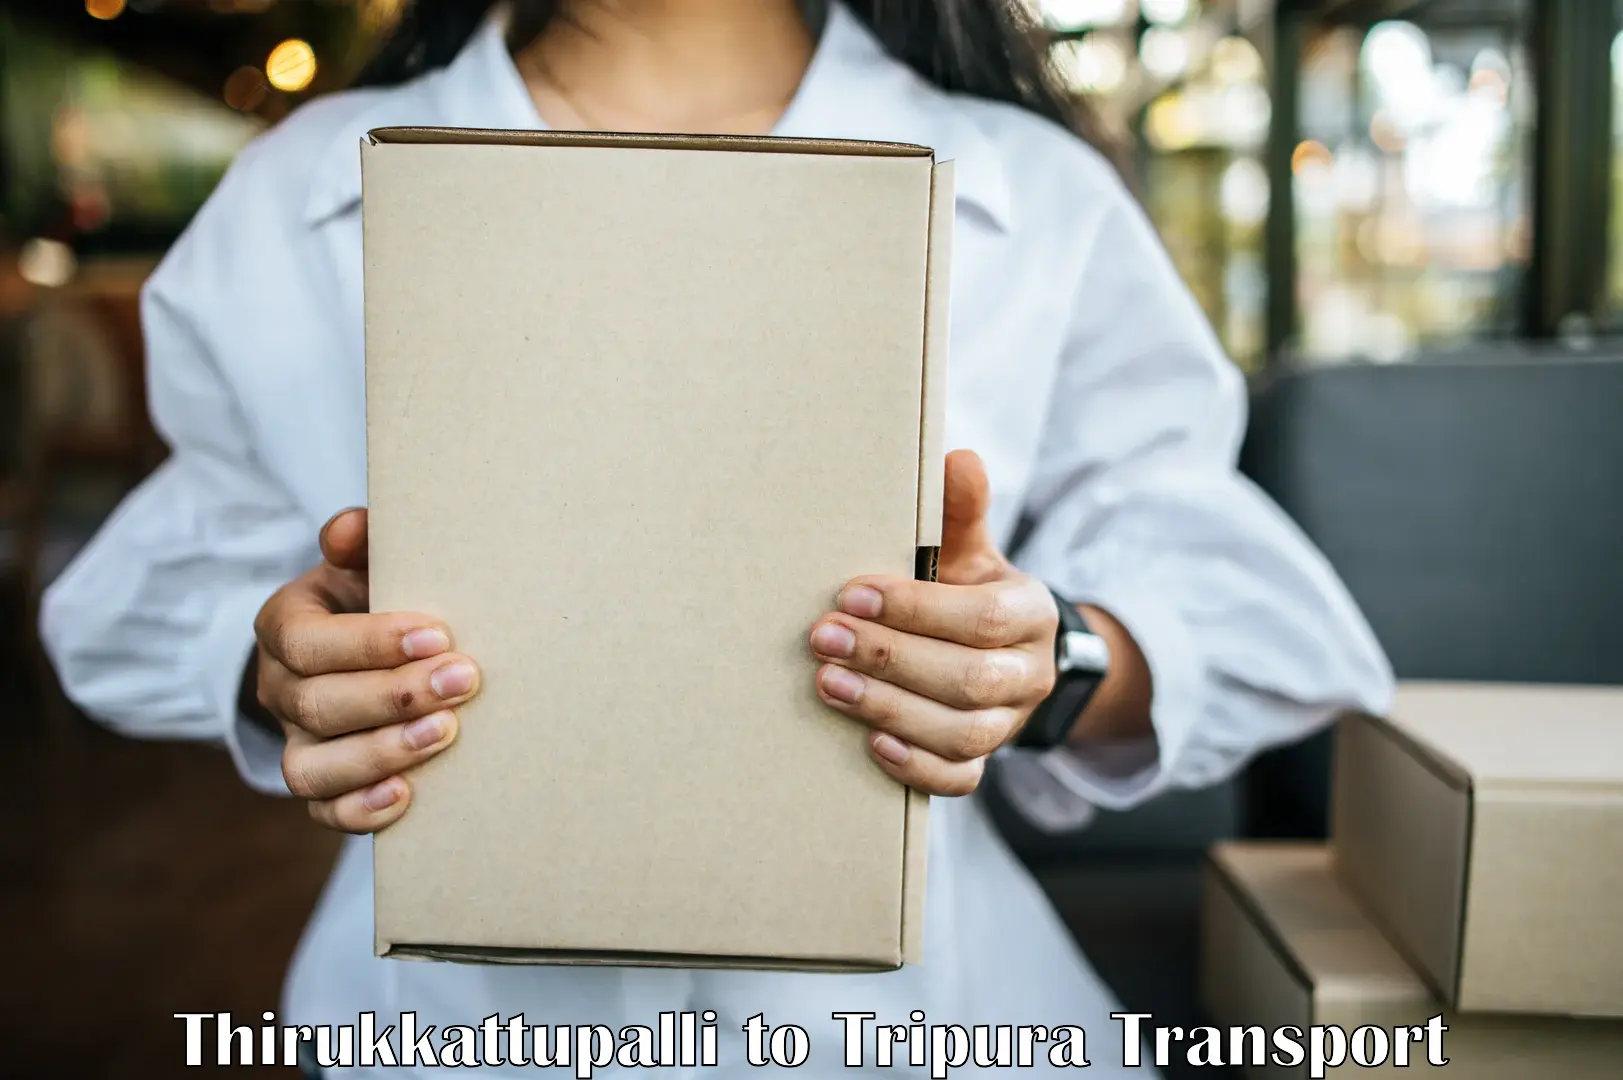 Nearest transport service Thirukkattupalli to Ambassa